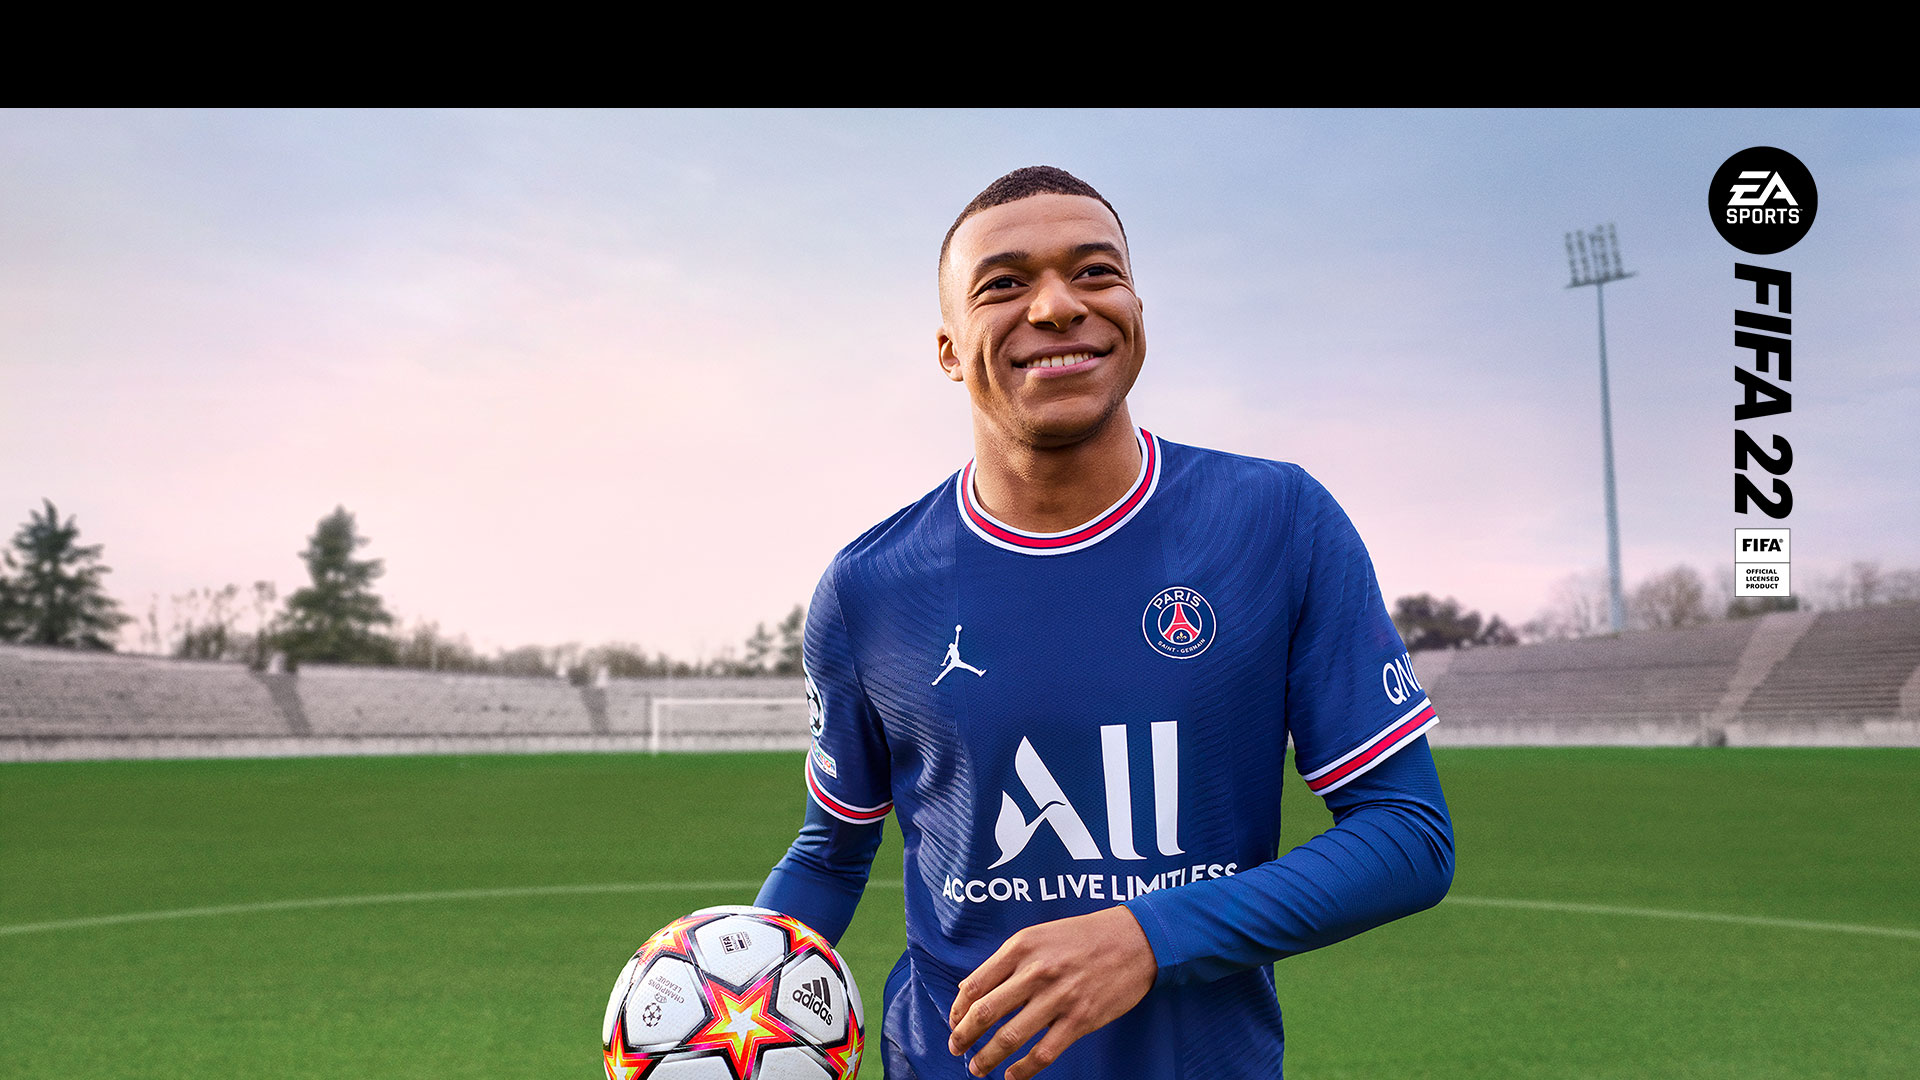 EA Sports, FIFA 22 공식 라이선스 제품, 웃고 있는 선수가 빈 경기장에서 공을 들고 있습니다.